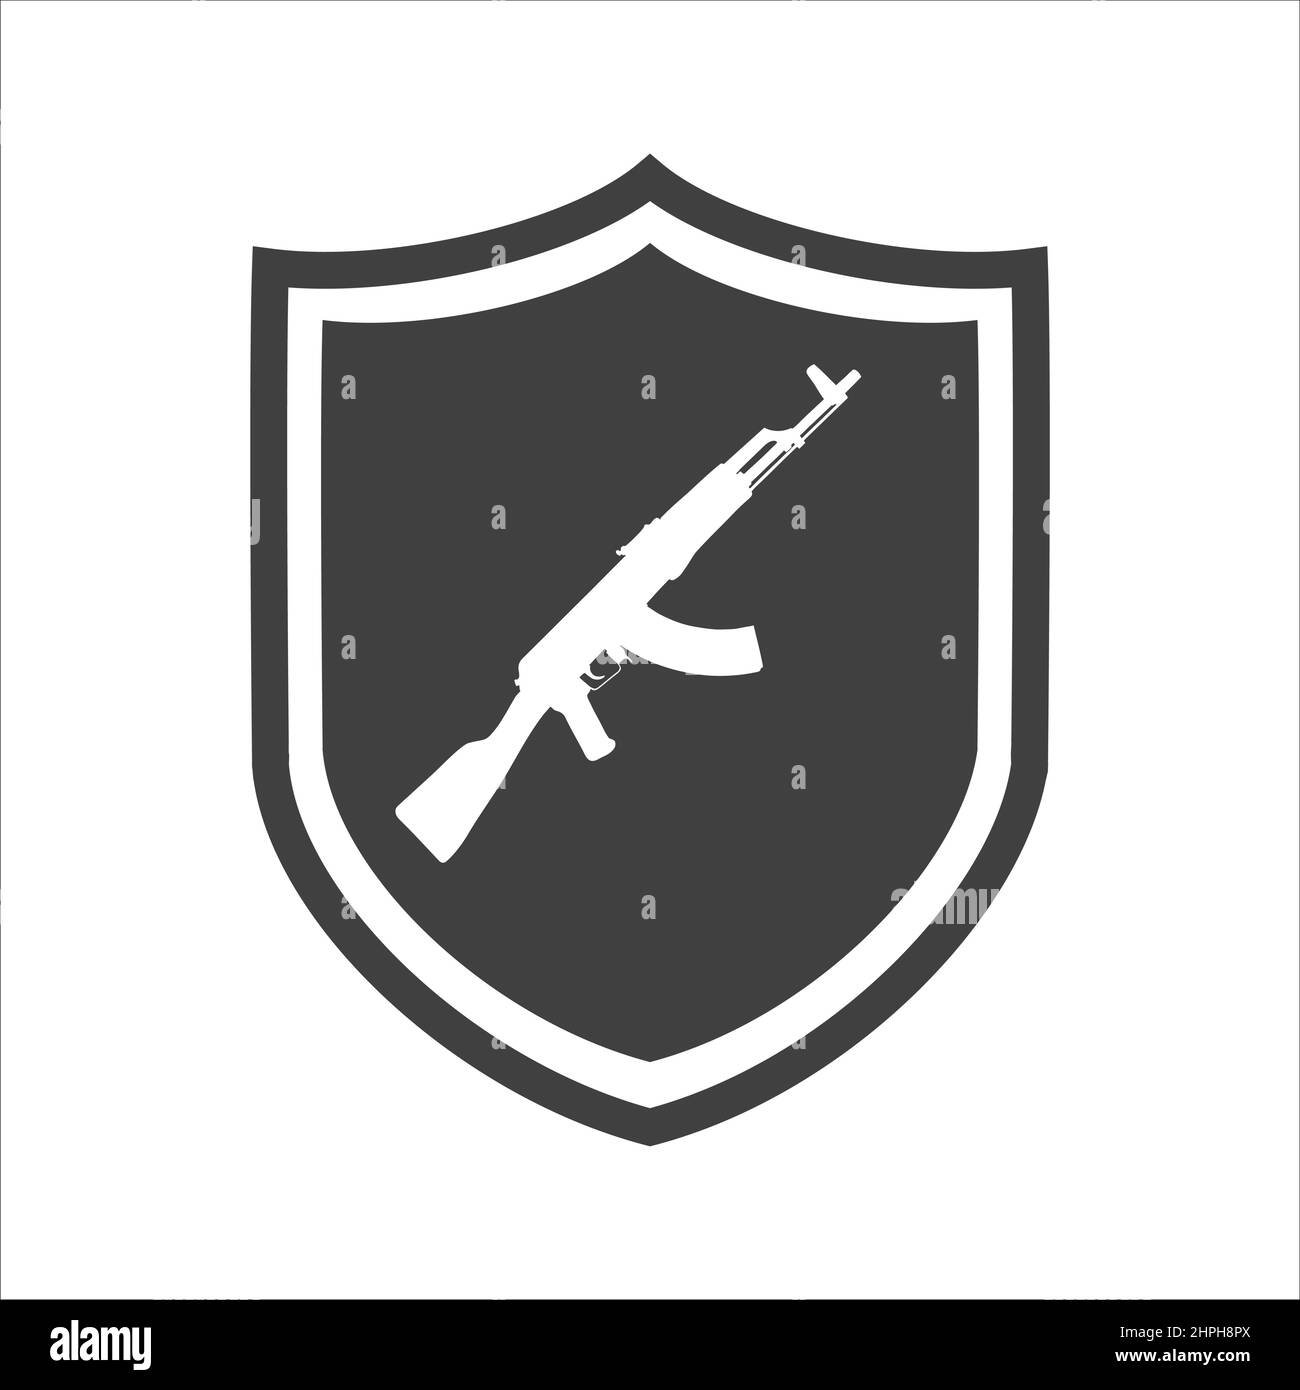 AK47 icône. Silhouette noire de mitrailleuse Kalashnikov. Illustration vectorielle Illustration de Vecteur